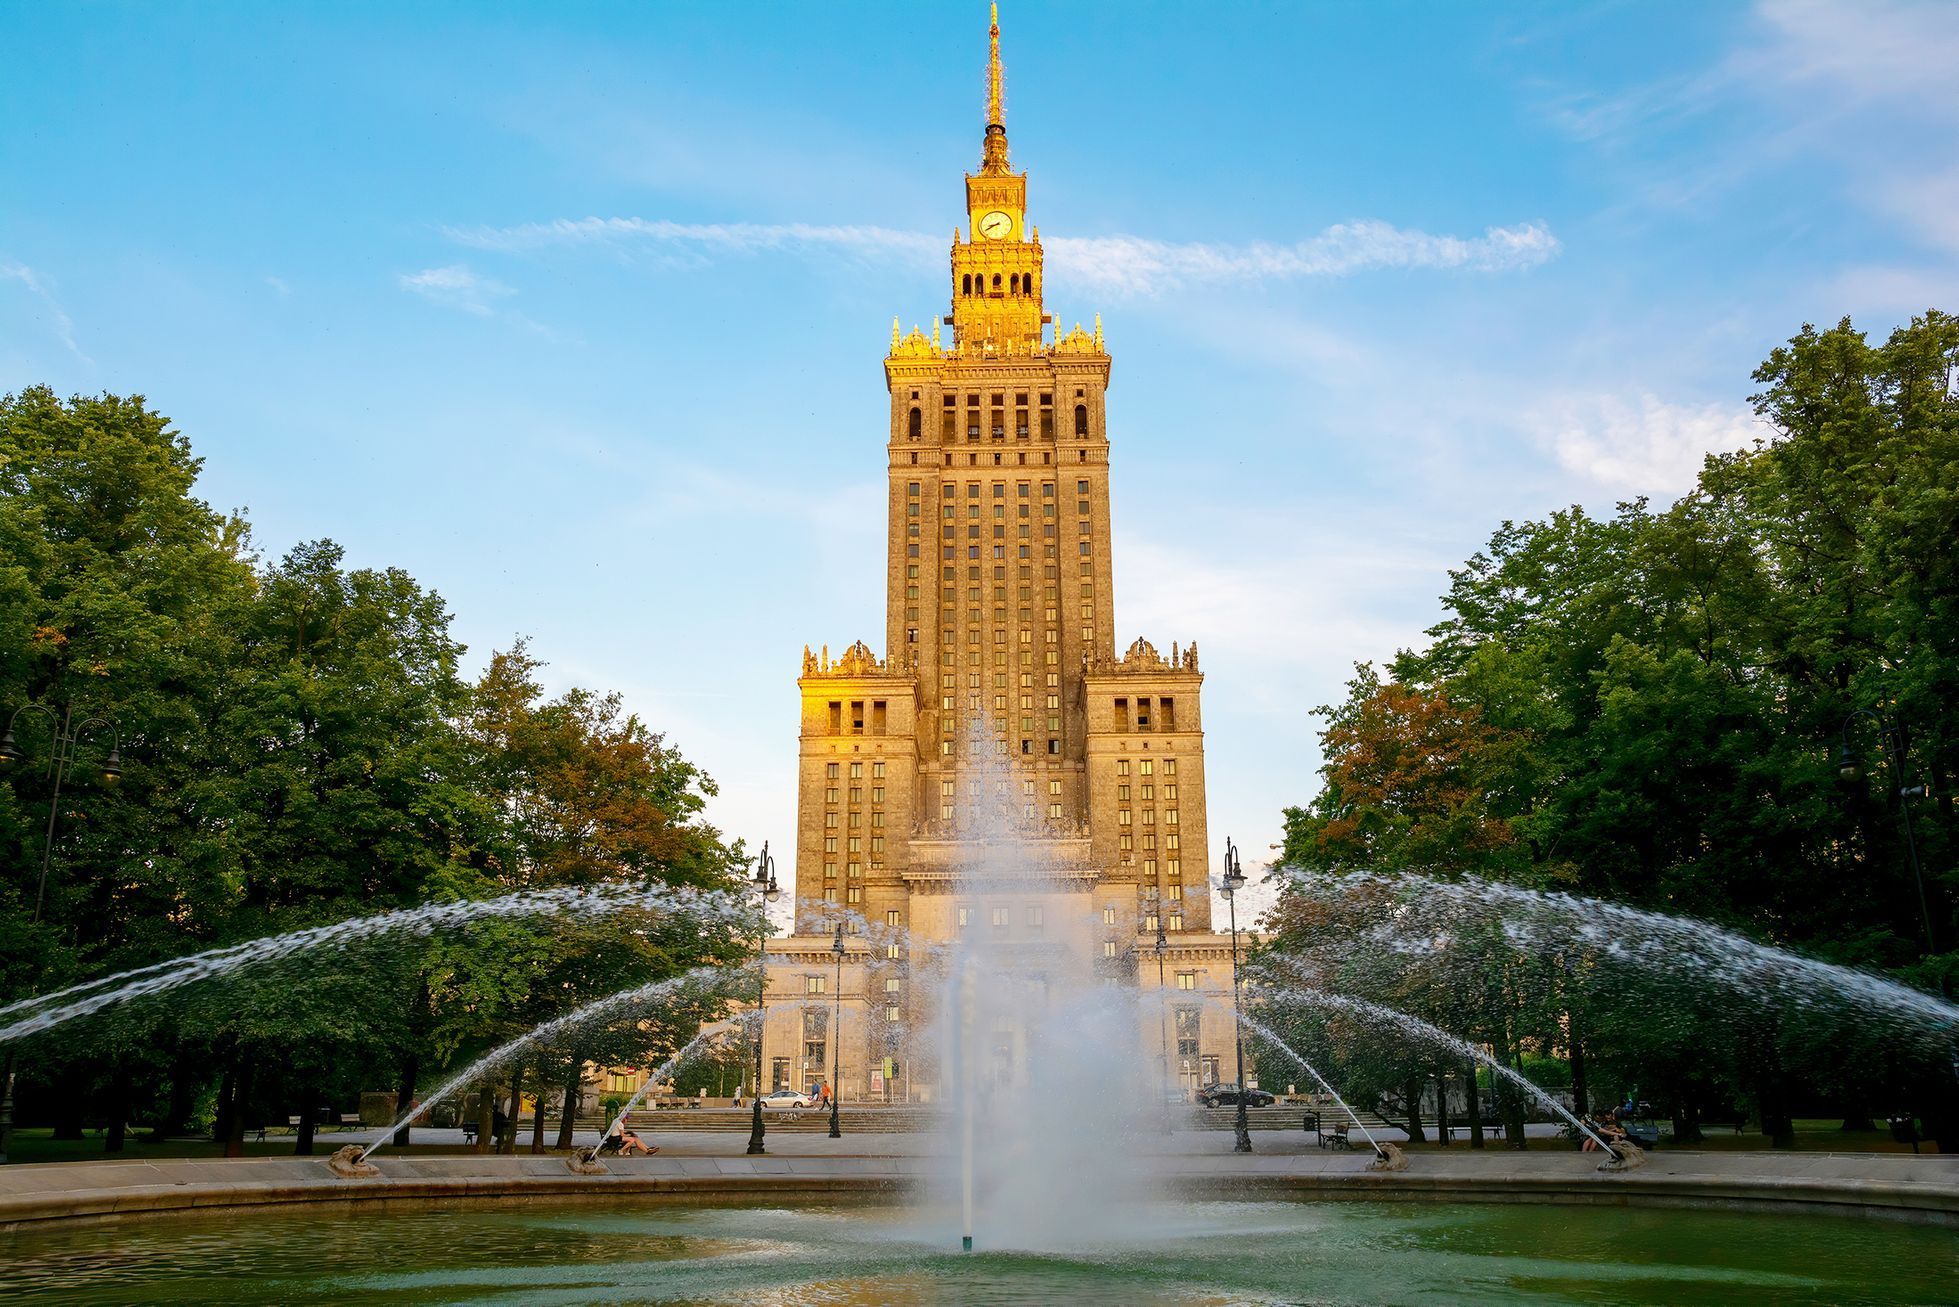 Jednorázové užití / Fotogalerie / Před 65 lety byl ve Varšavě otevřen monumentální Palác kultury a vědy